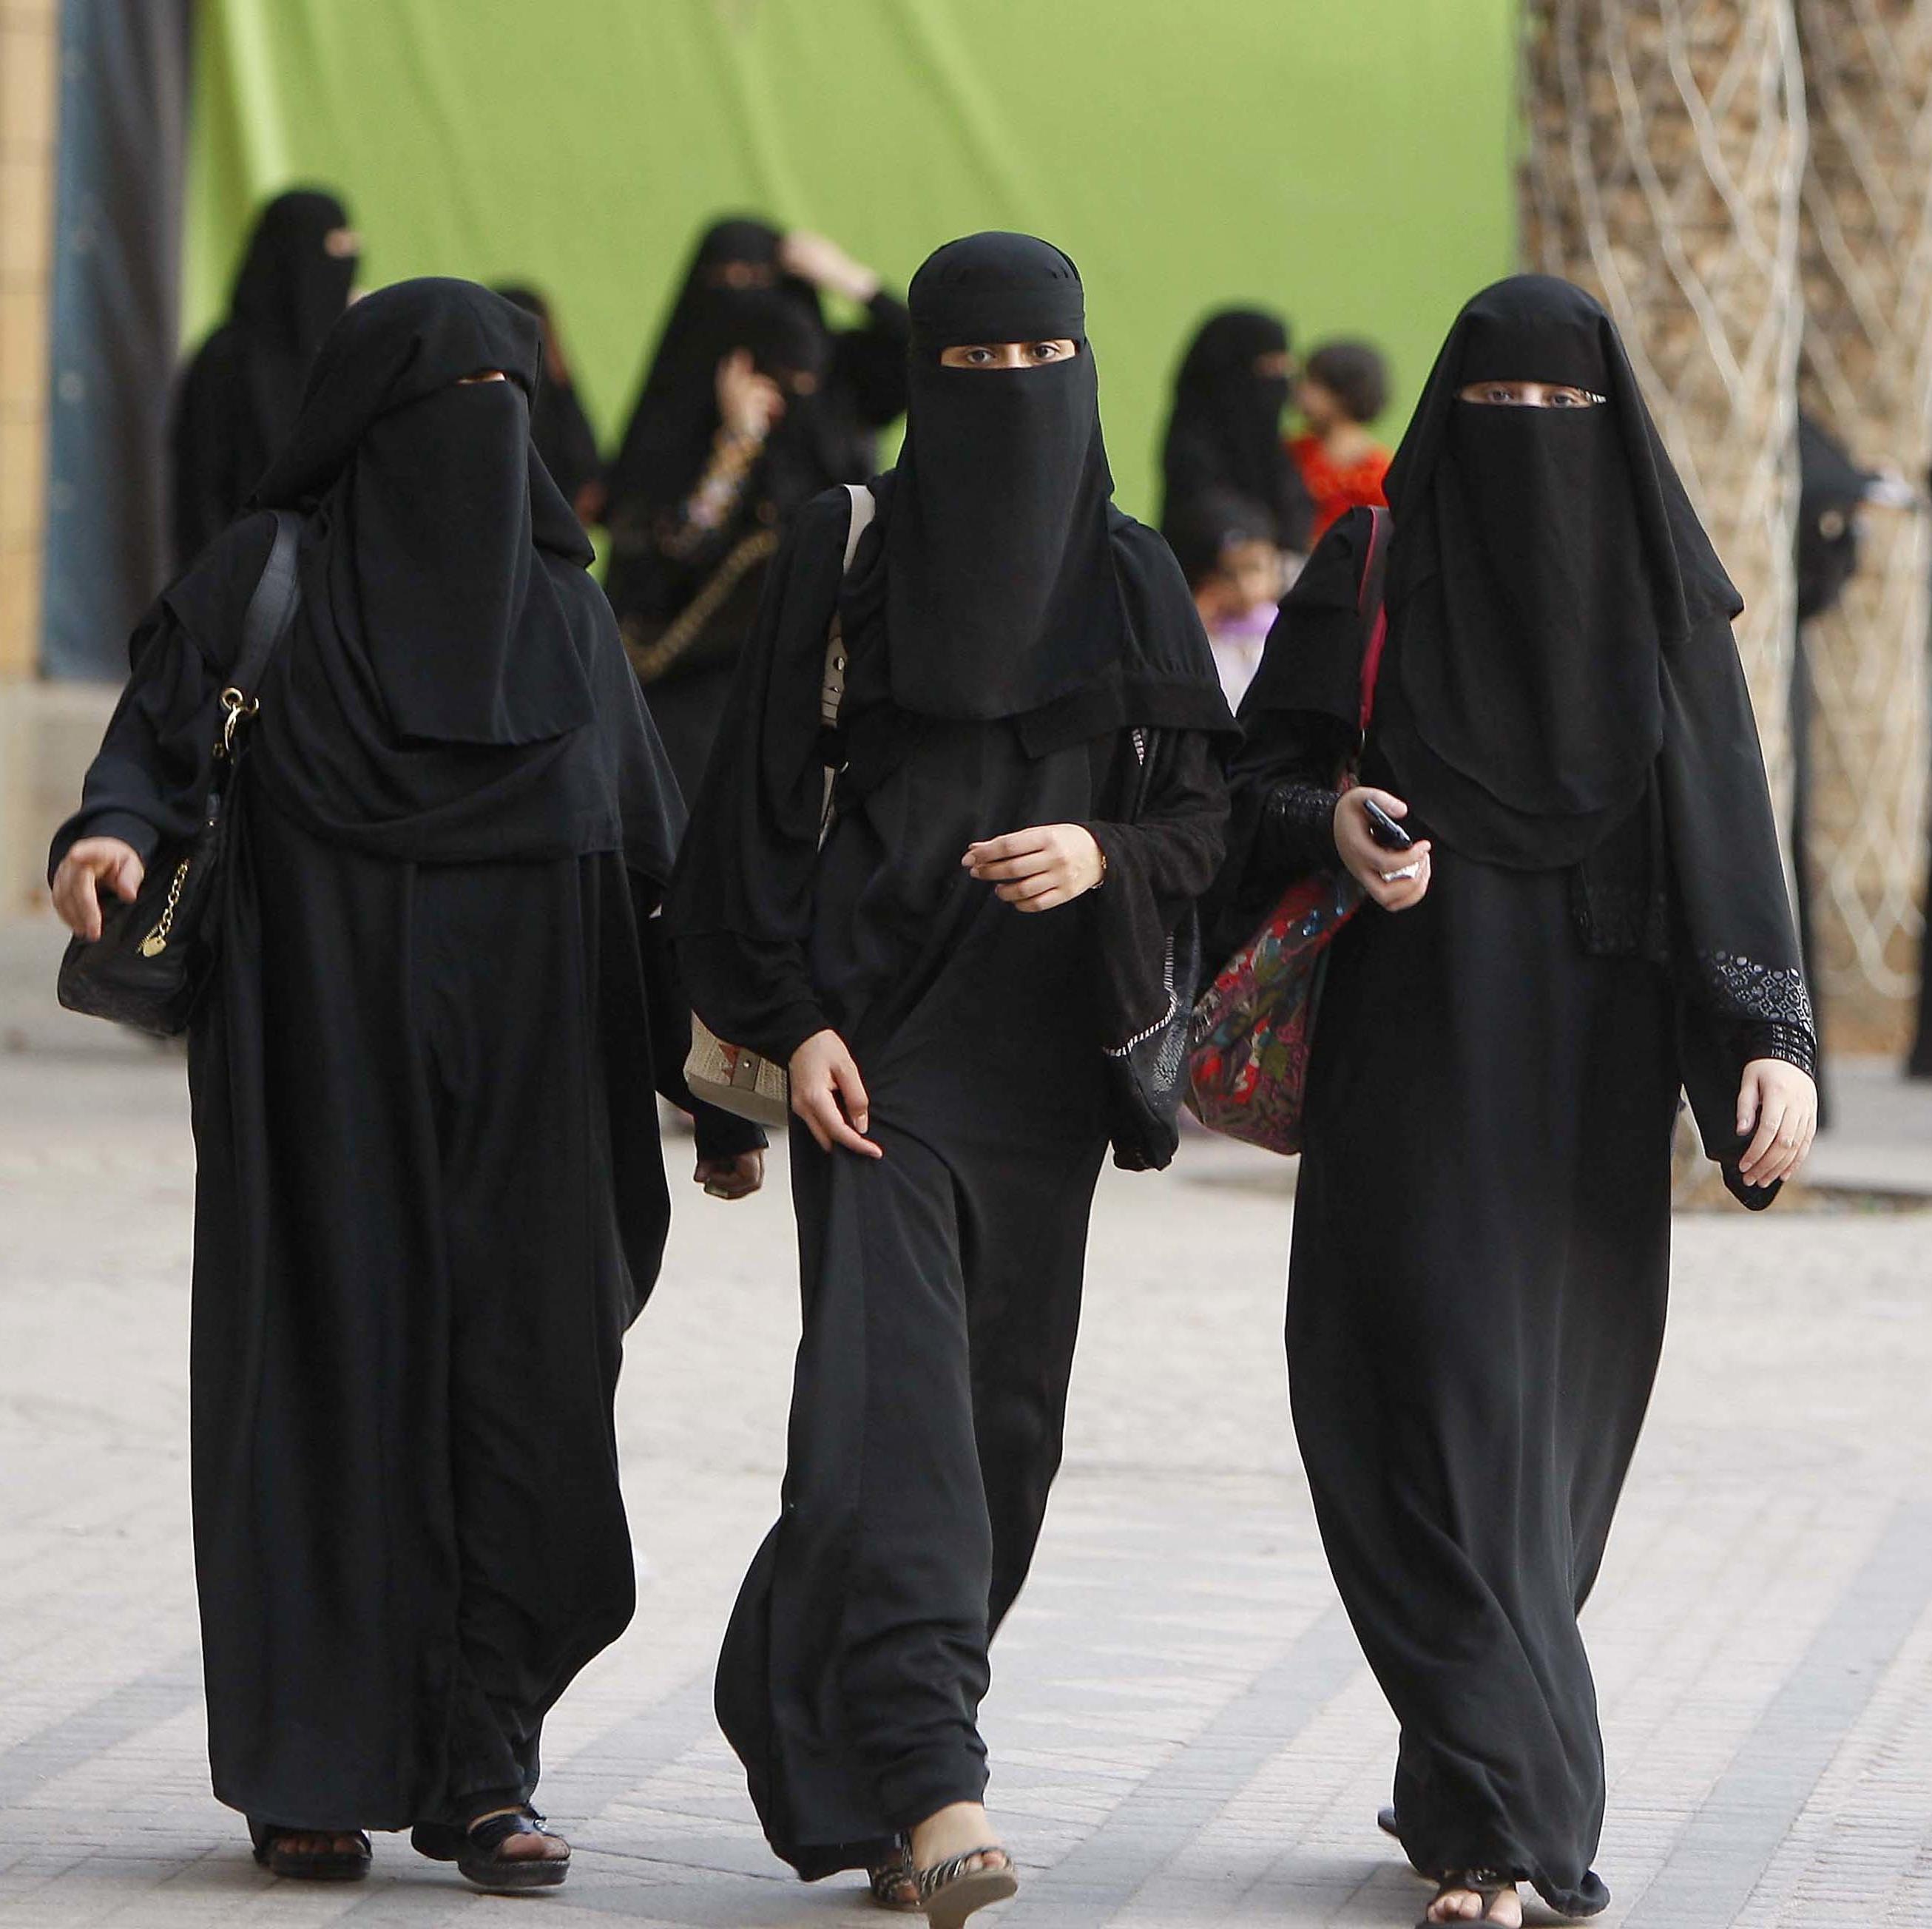 穿着传统面纱的时髦传统服装的黑人穆斯林女孩. 世界文化. 库存照片 - 图片 包括有 介绍, 宗教信仰: 222103008